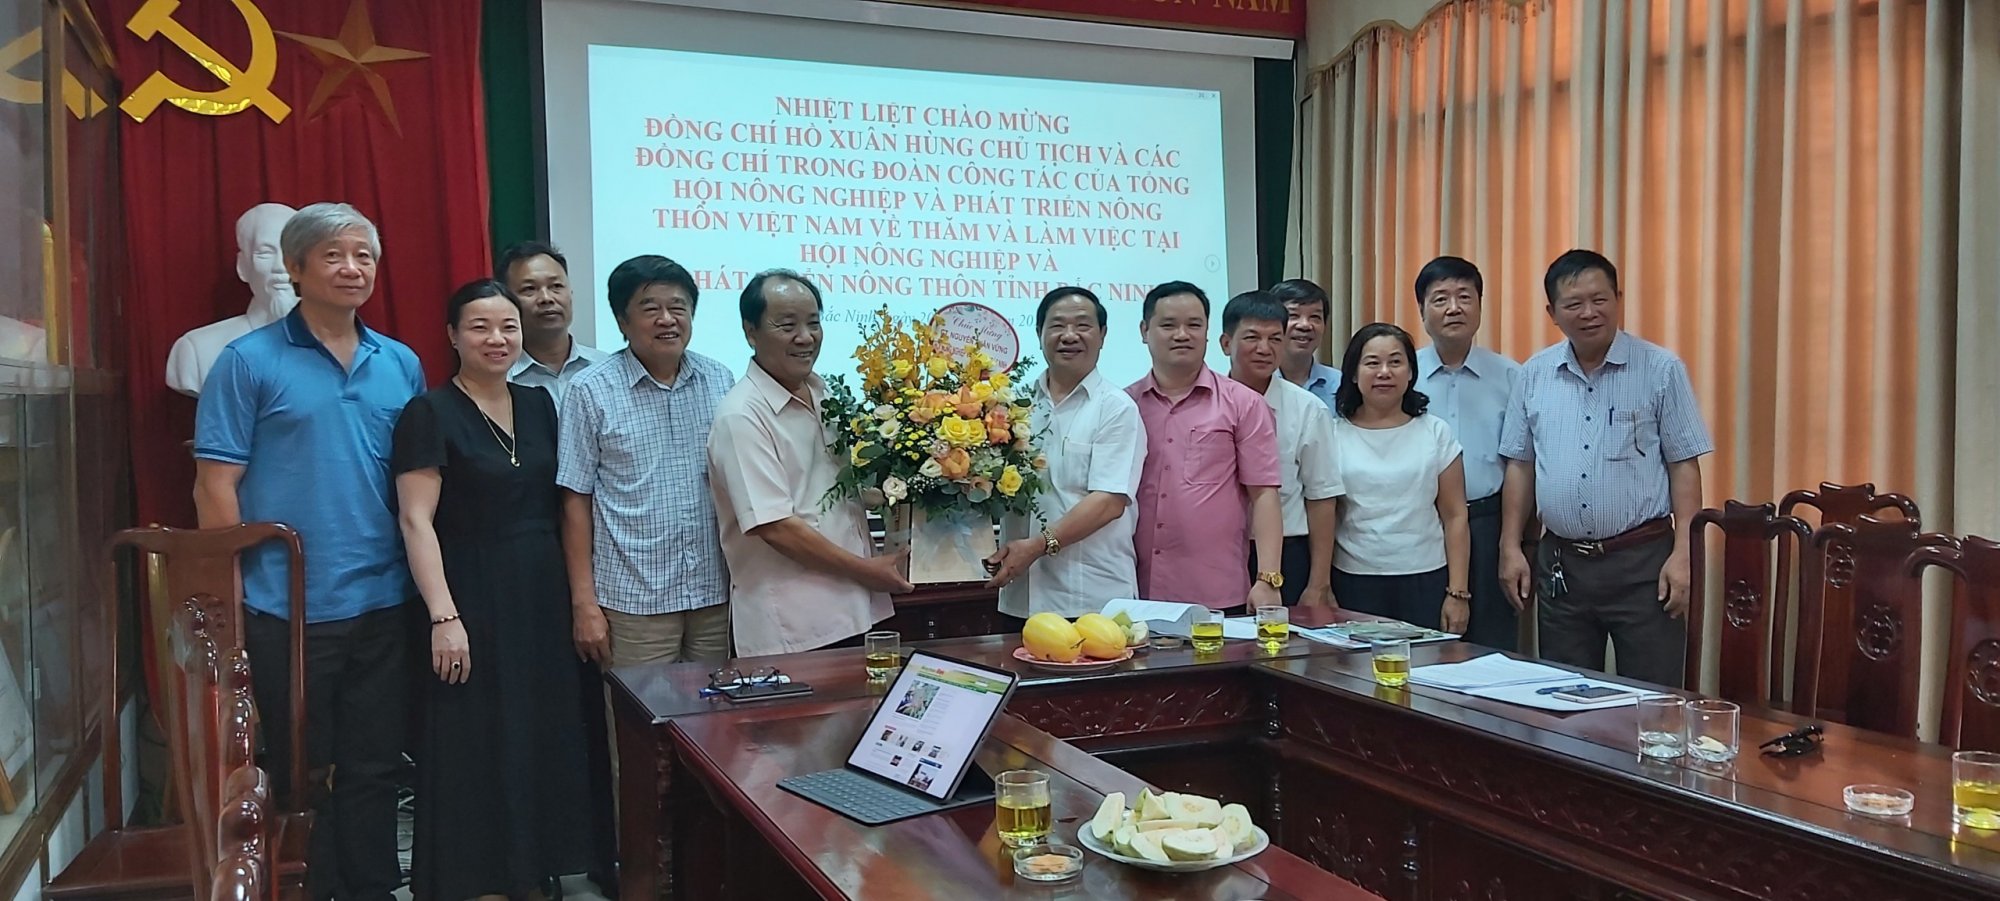 Đoàn công tác của Tổng hội NN&PTNT VN đến thăm và làm việc với Hội NN&PTNT tỉnh Bắc Ninh